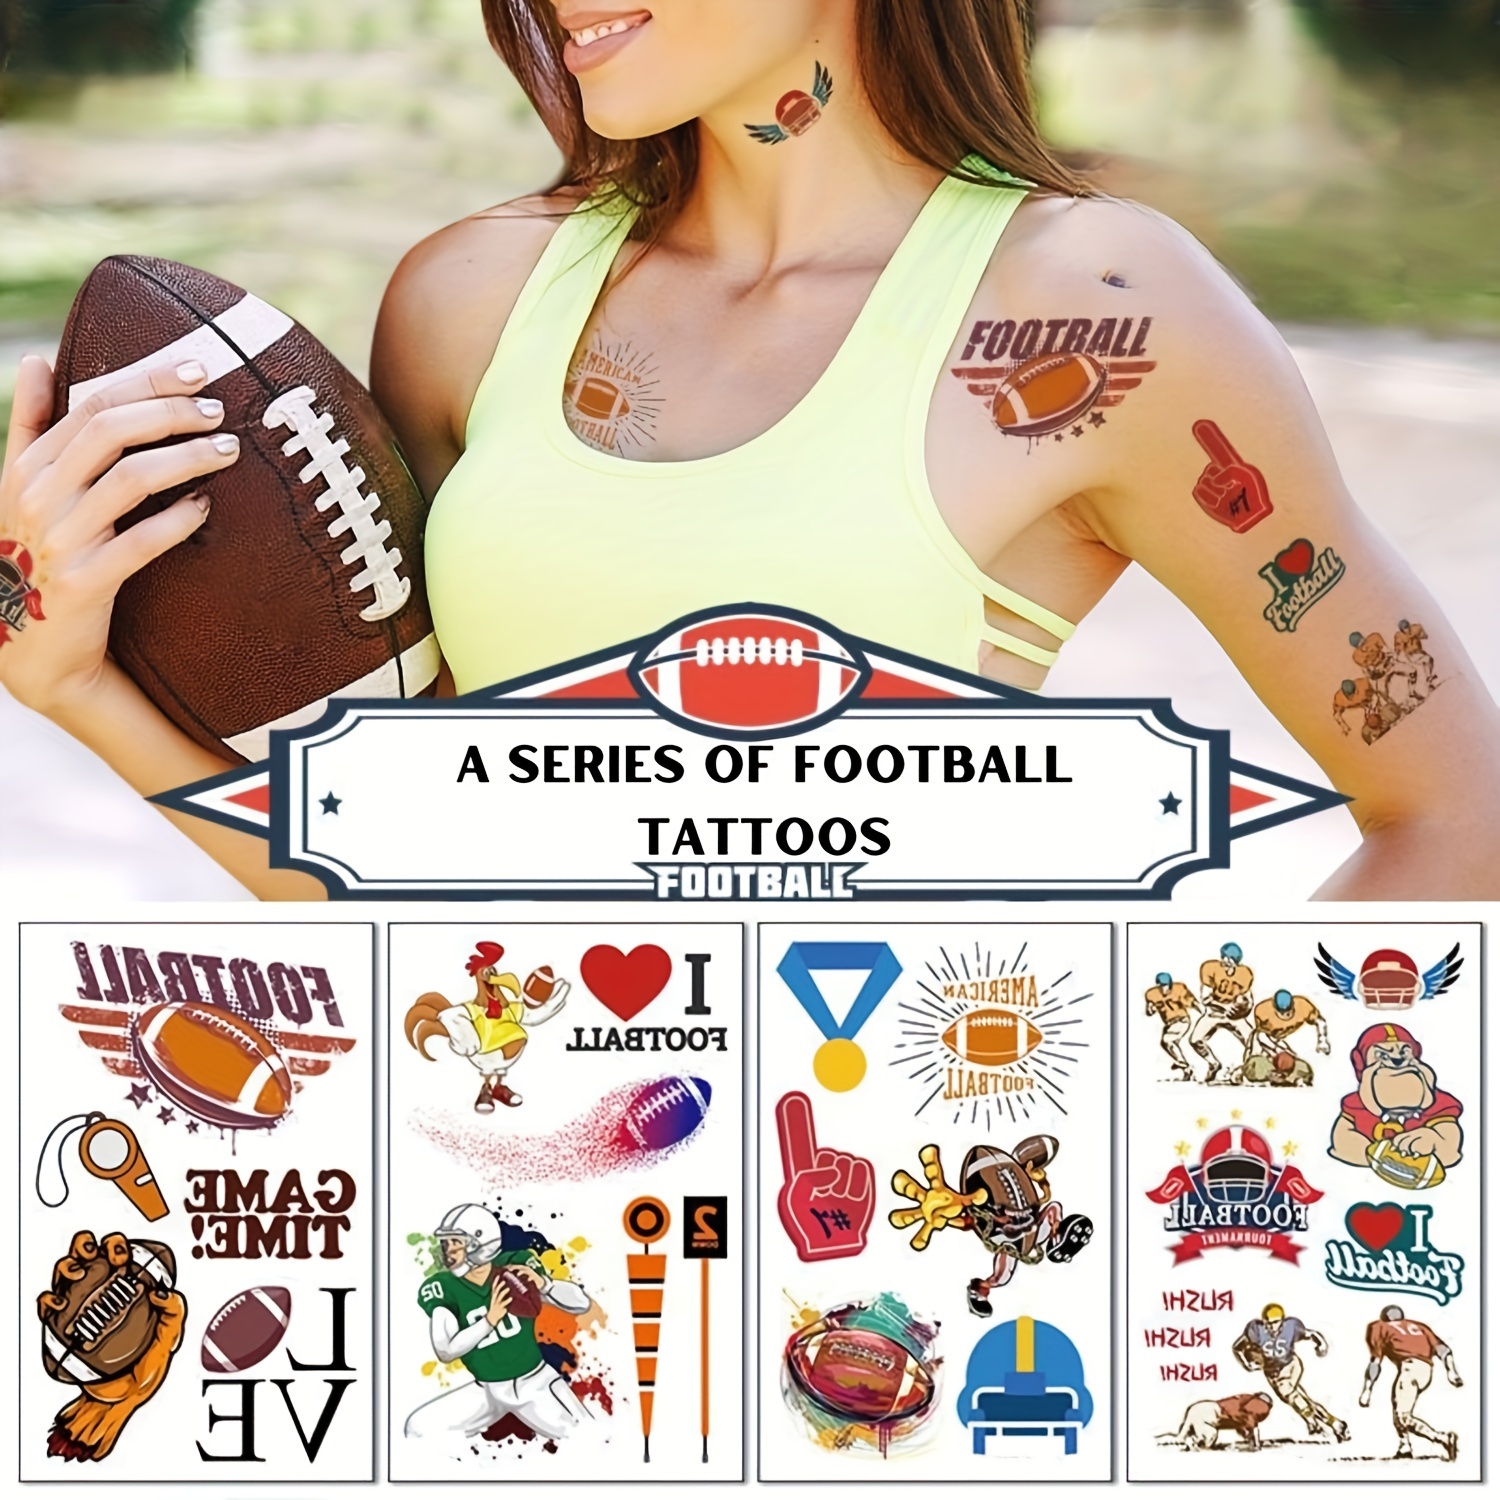 Tatuajes de fútbol del Super Bowl, tatuajes temporales de fútbol